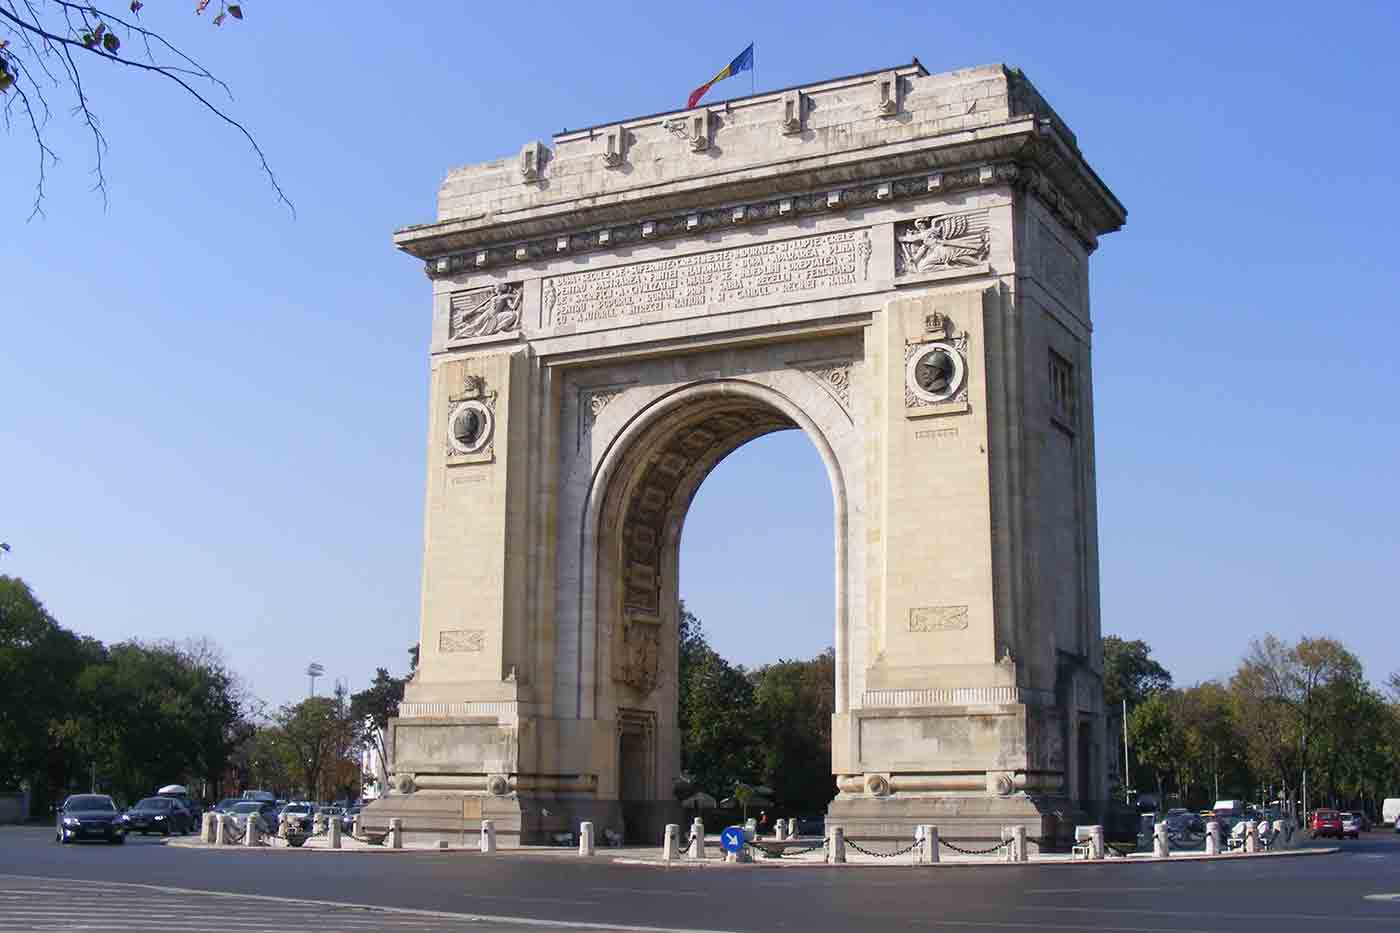 The Arch Of Triumph